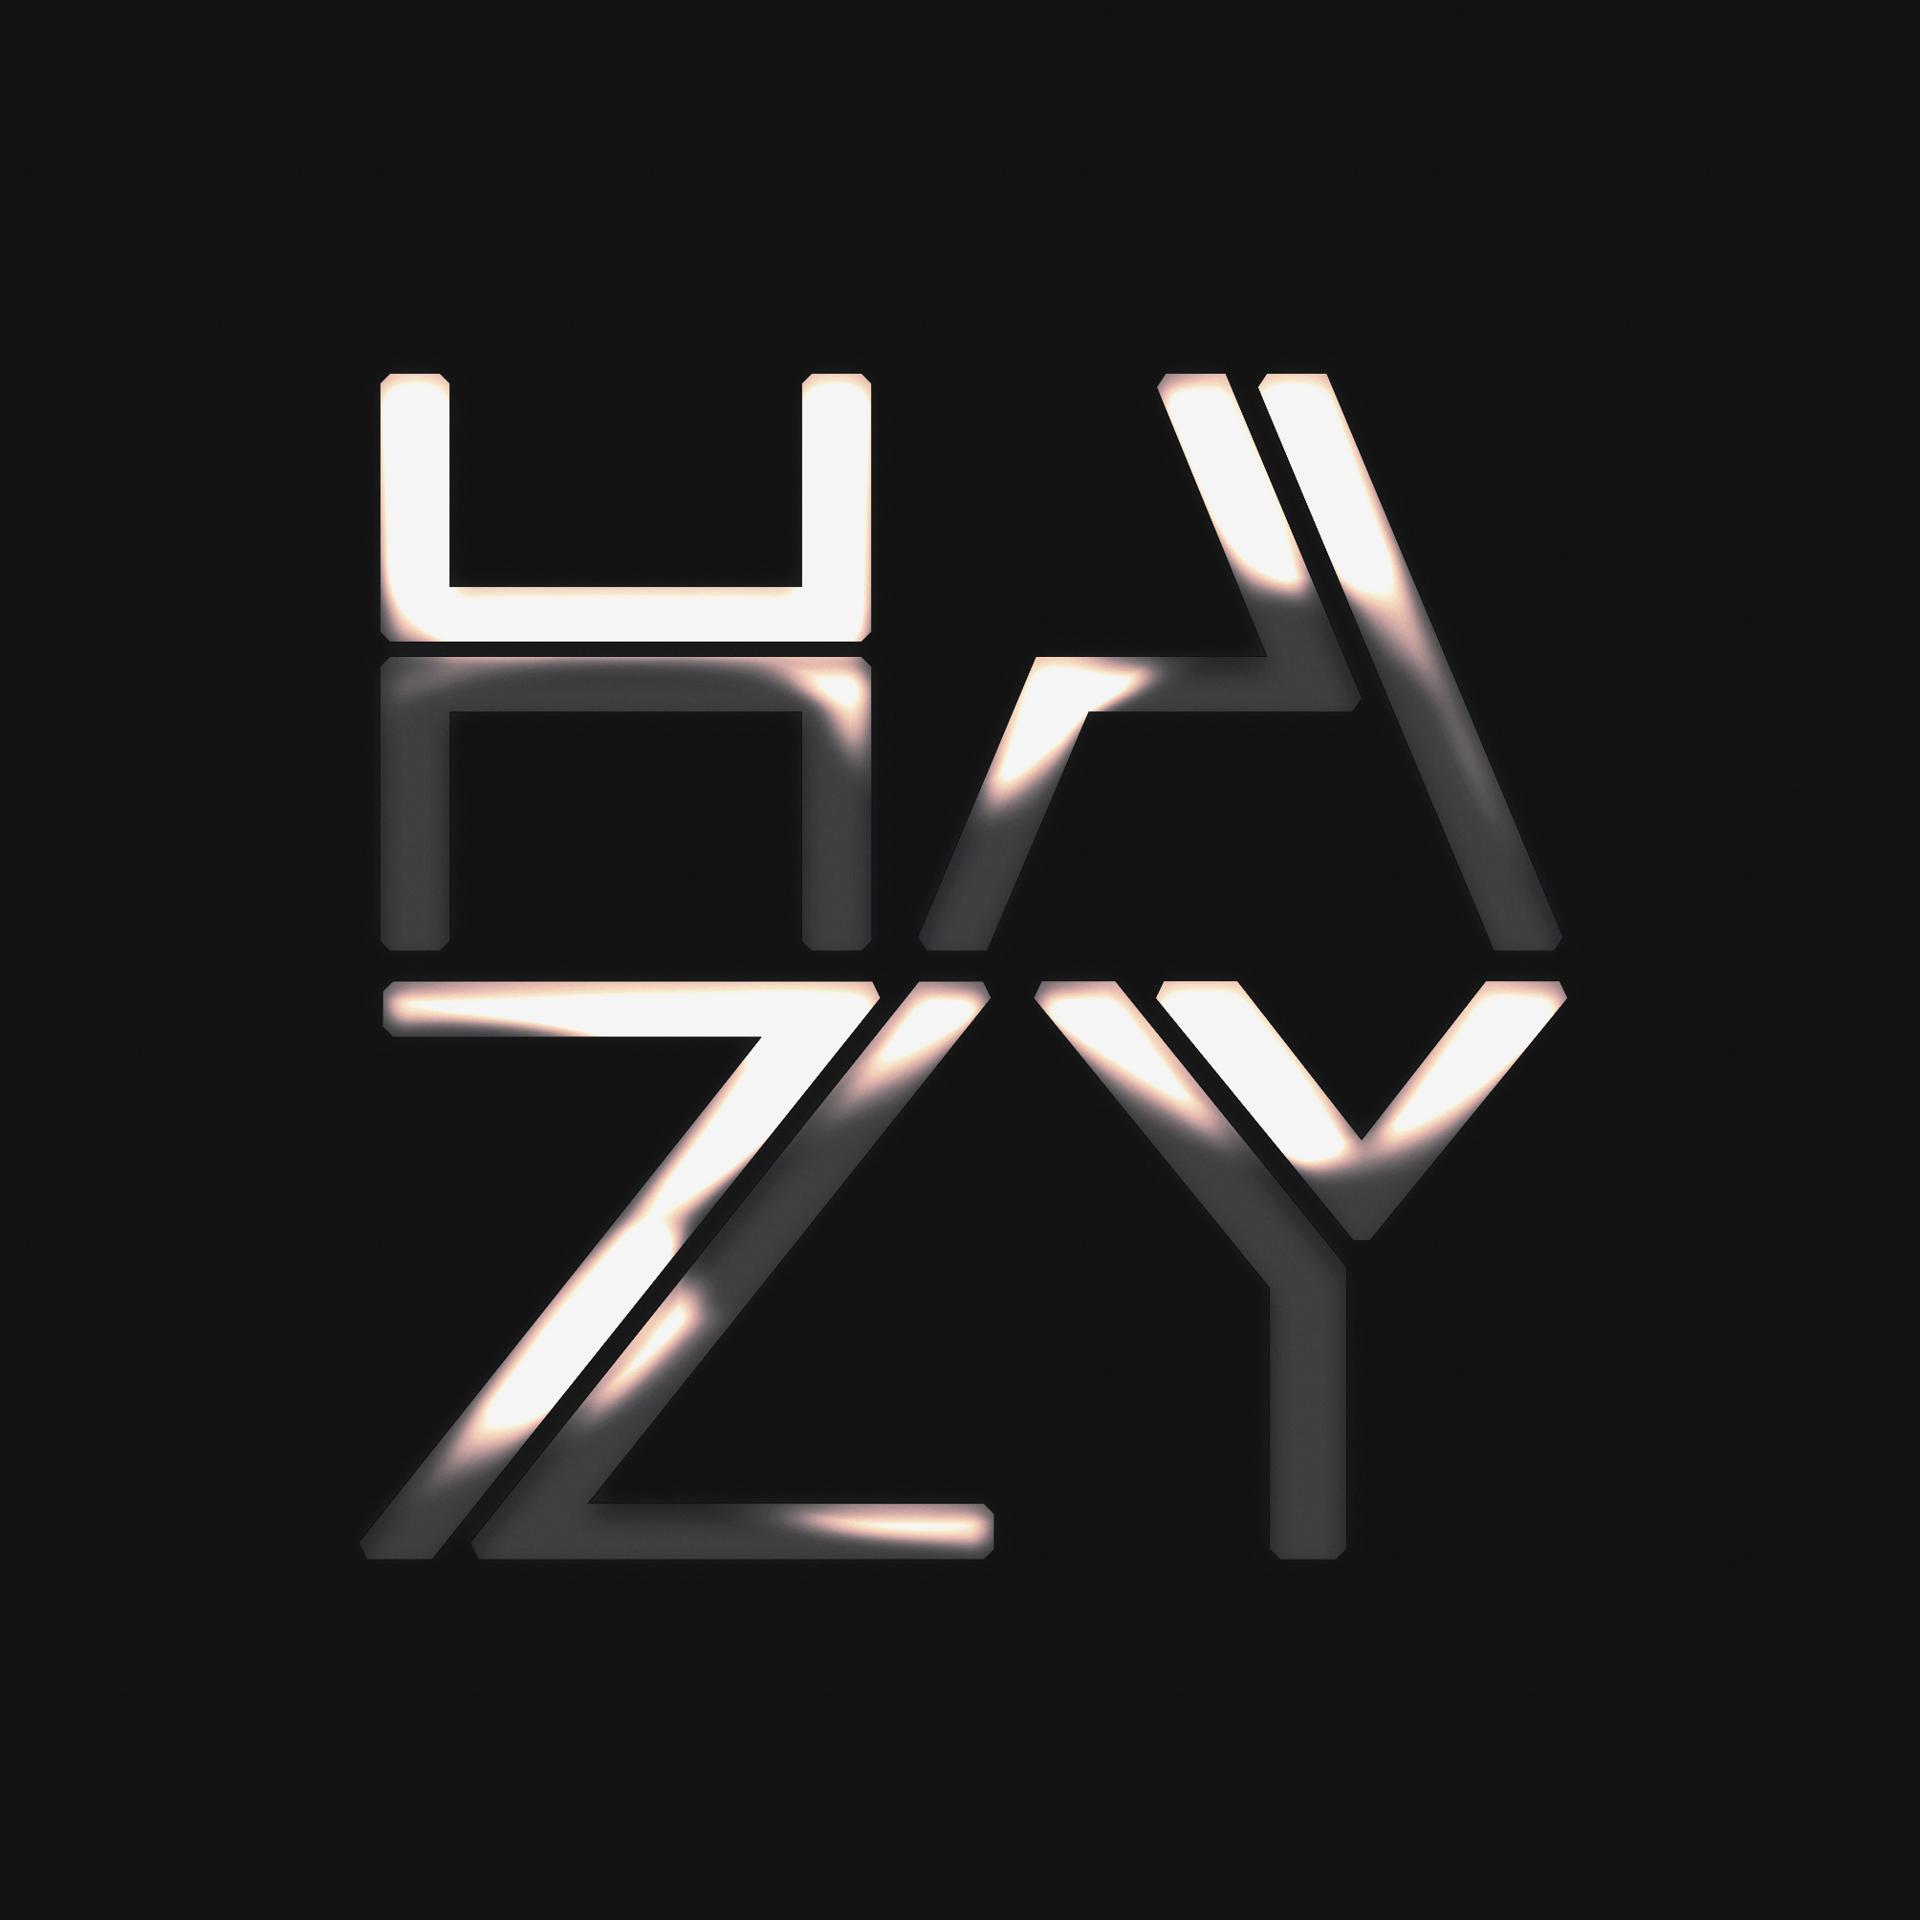 Постер альбома Hazy